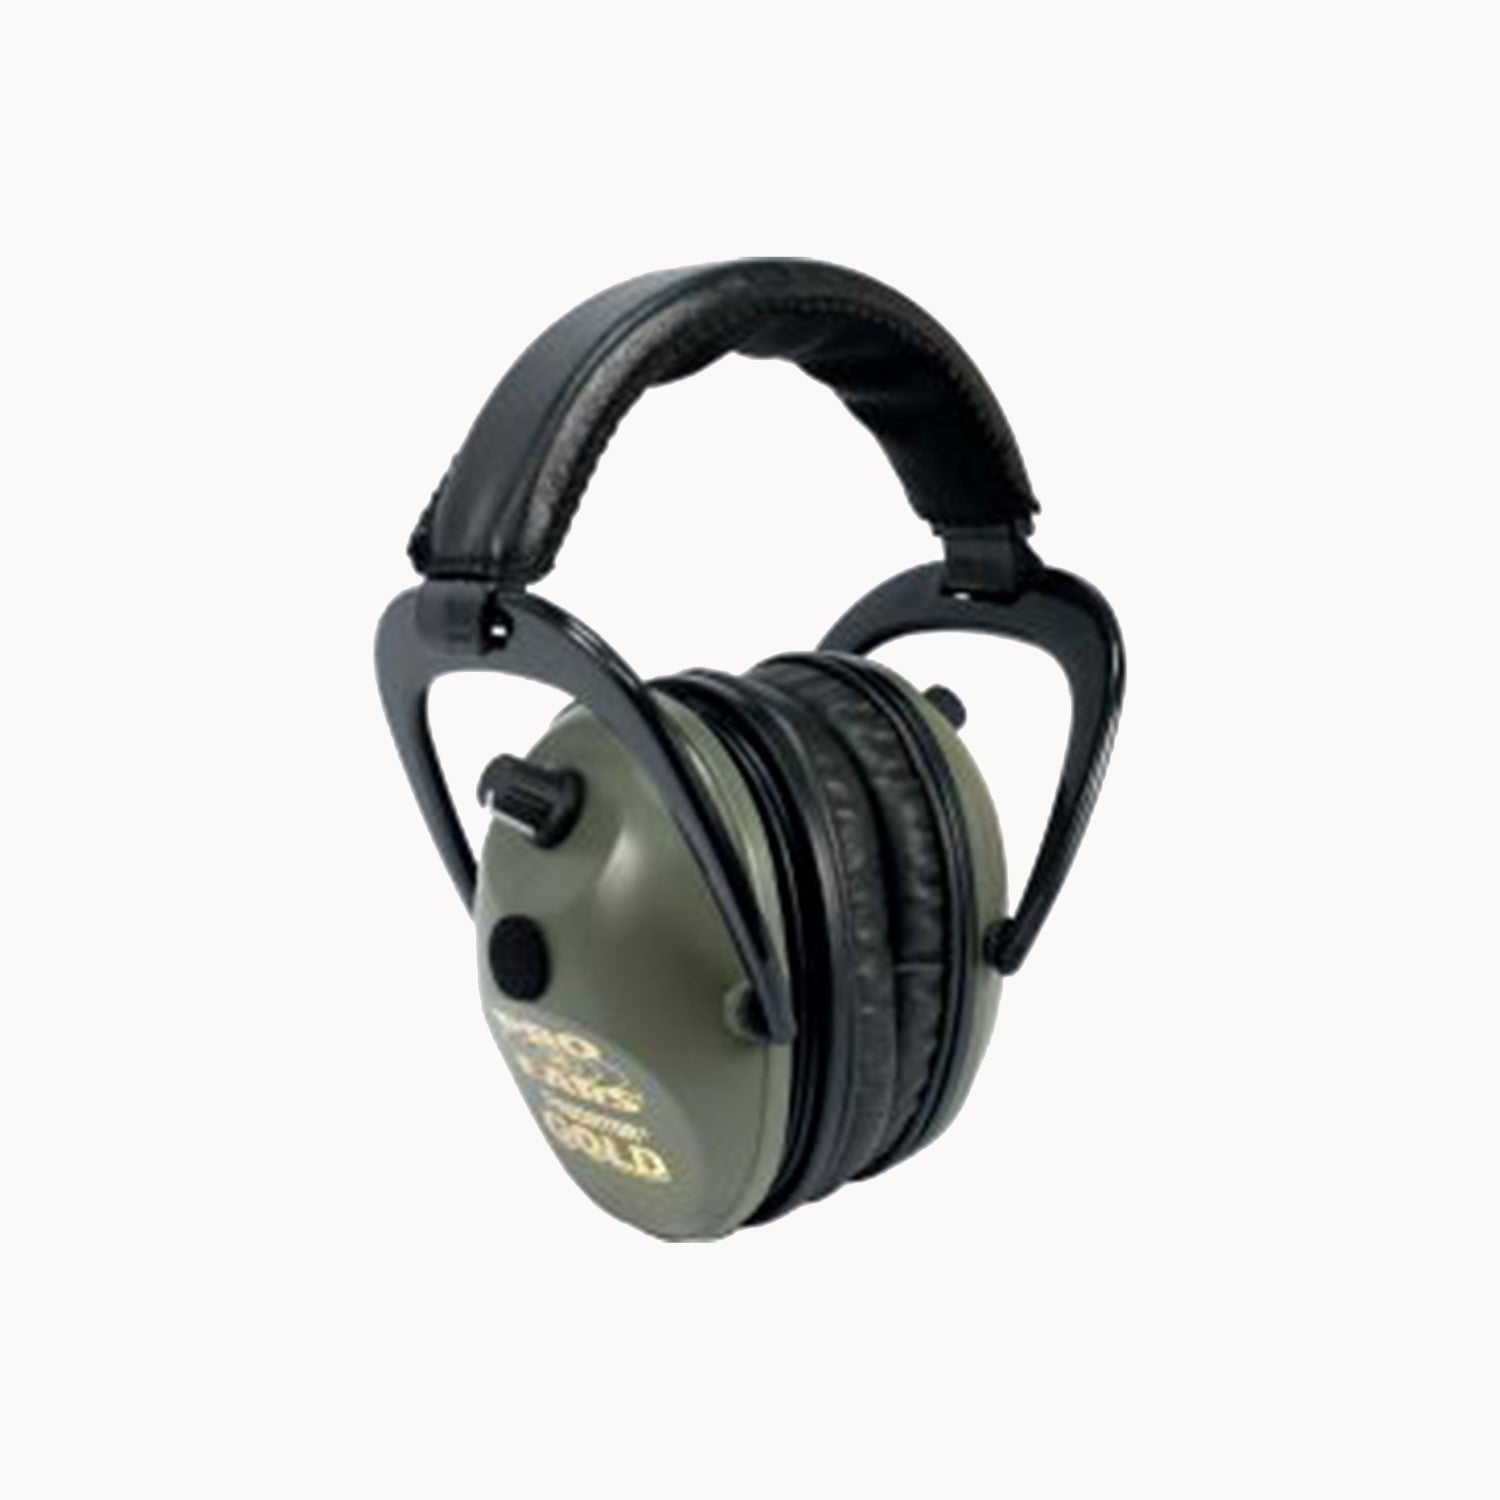 Pro Ears Predator Gold Series Ear Muffs Green GS-P300-G